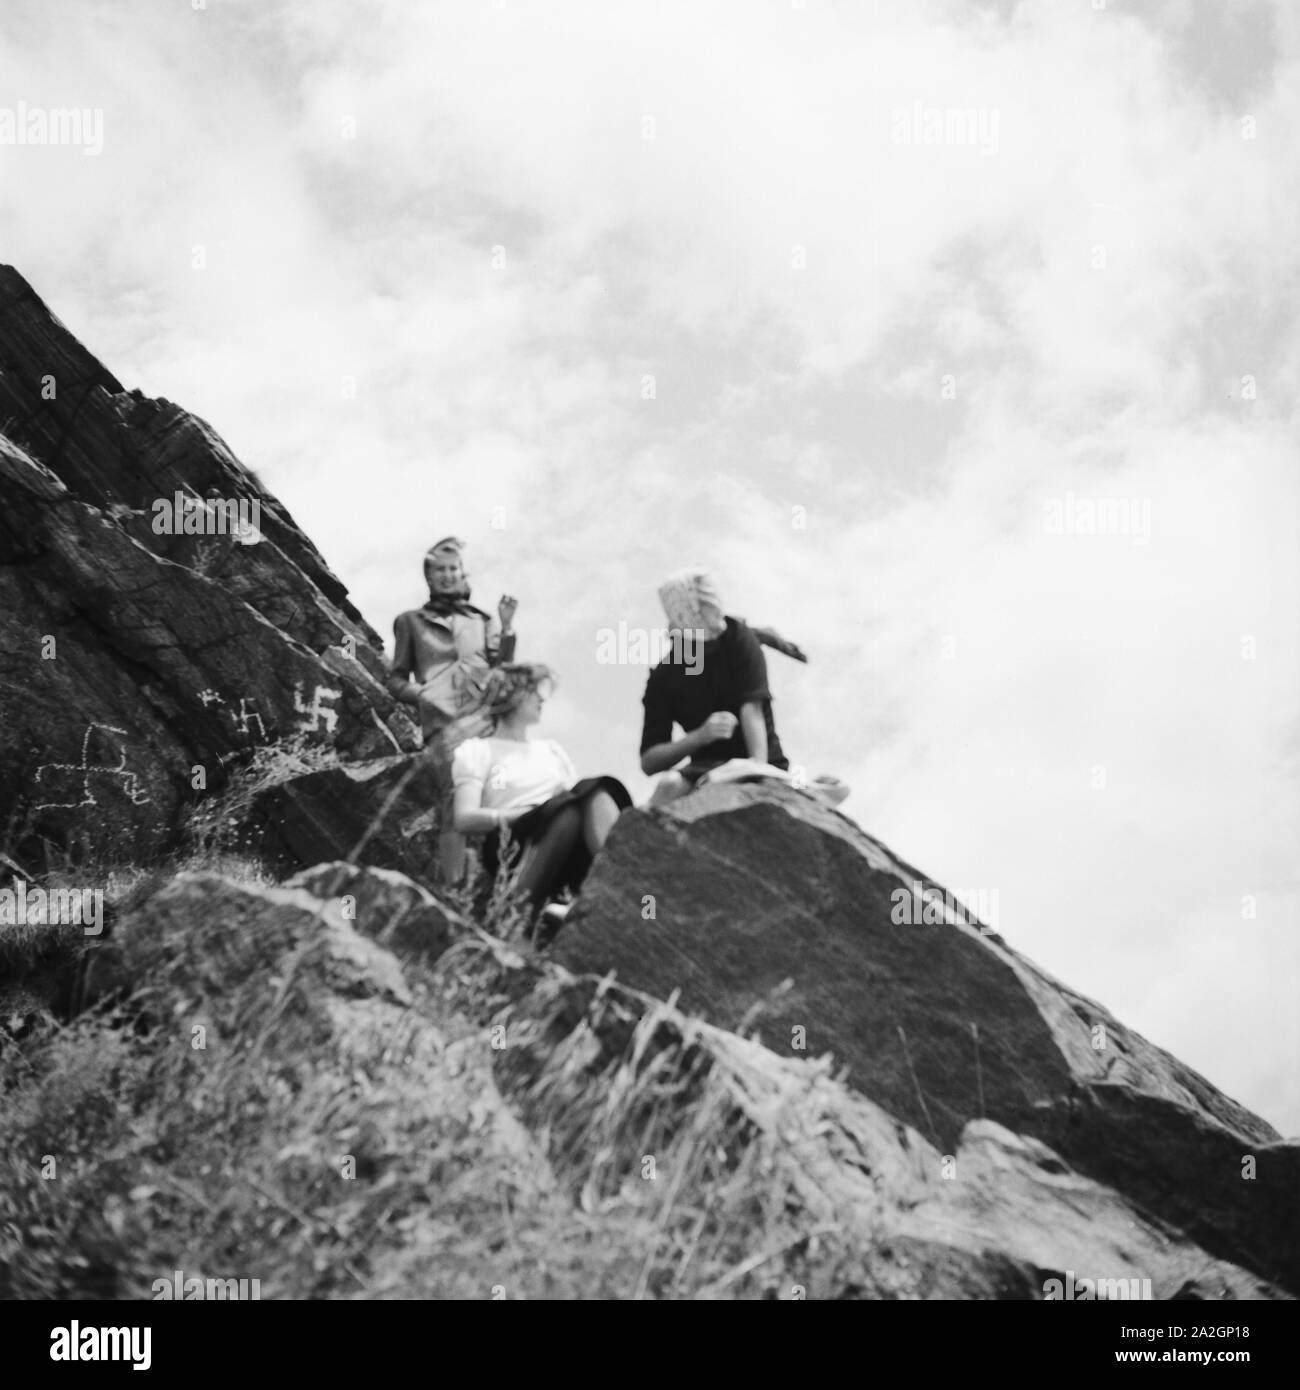 Drei junge Frauen haben einen Gipfel n der Wachau in Österreich erklommen, Deutschland 1930er Jahe. Three young woman reached the peak of a mountain in the Wachau area in Austria, Germany 1930s. Stock Photo